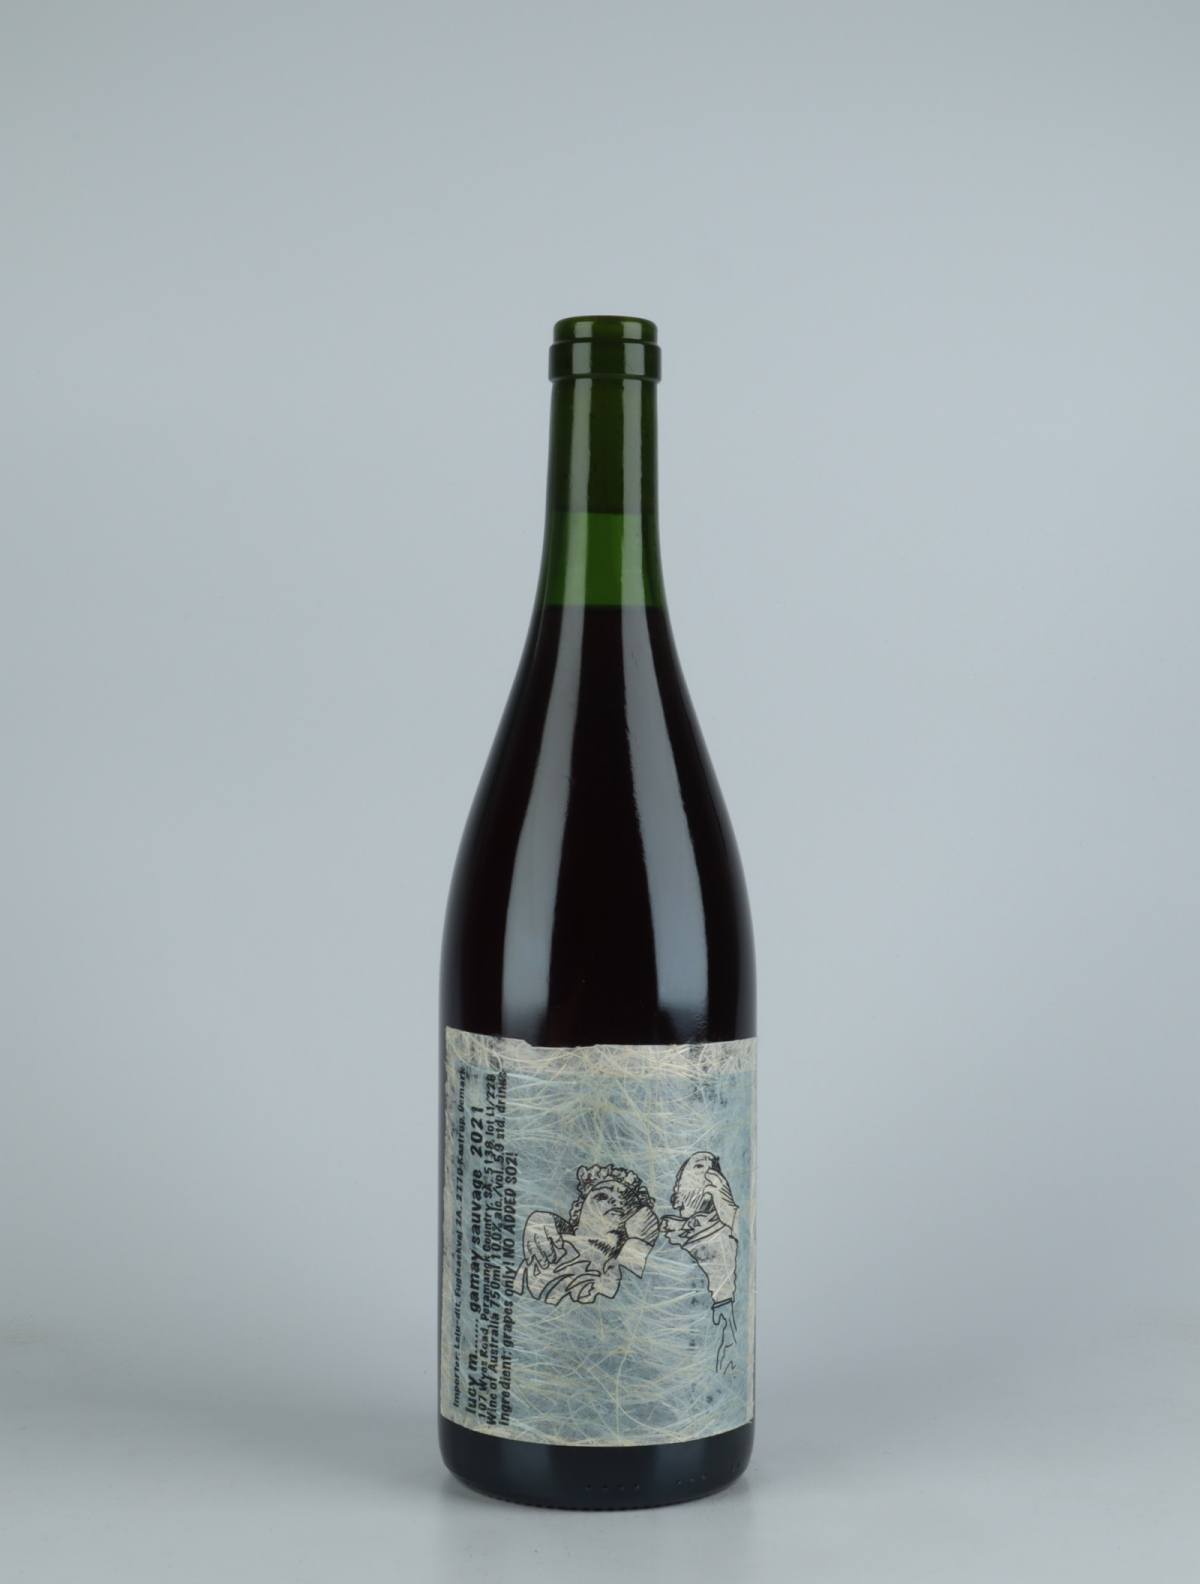 En flaske 2021 Gamay Sauvage Rødvin fra Lucy Margaux, Adelaide Hills i Australien